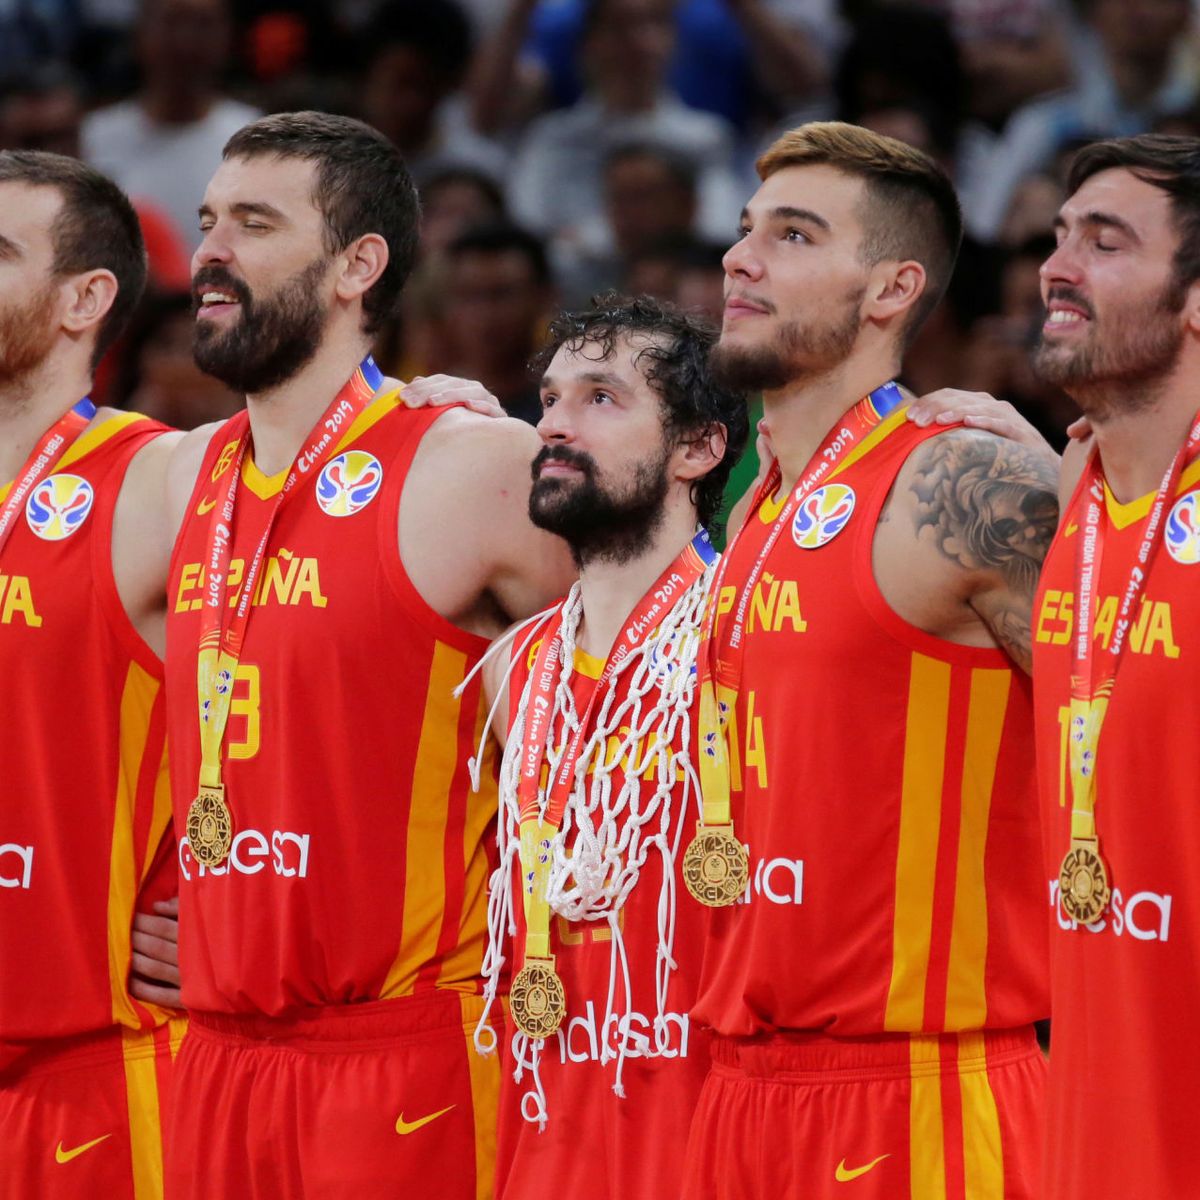 Ganar el Mundial básquet es muy difícil. Comprar la camiseta de España es imposible